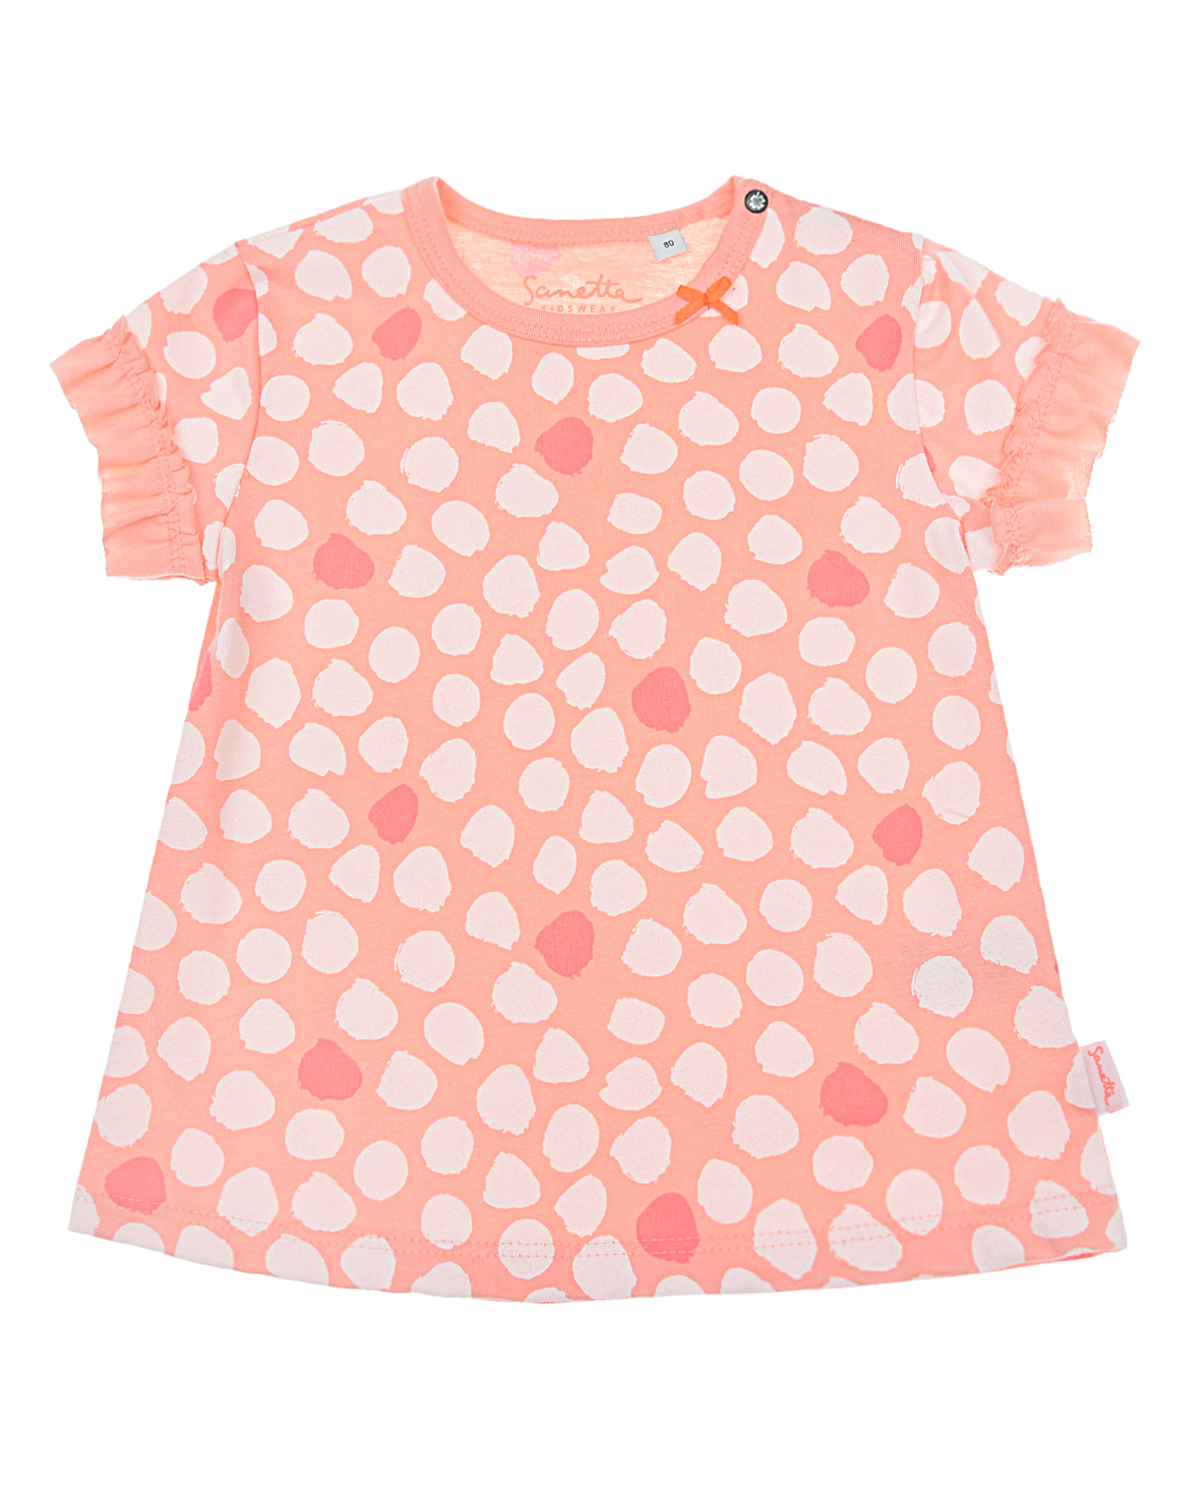 Футболка персикового цвета с принтом в горошек Sanetta Kidswear детская, размер 62 - фото 1